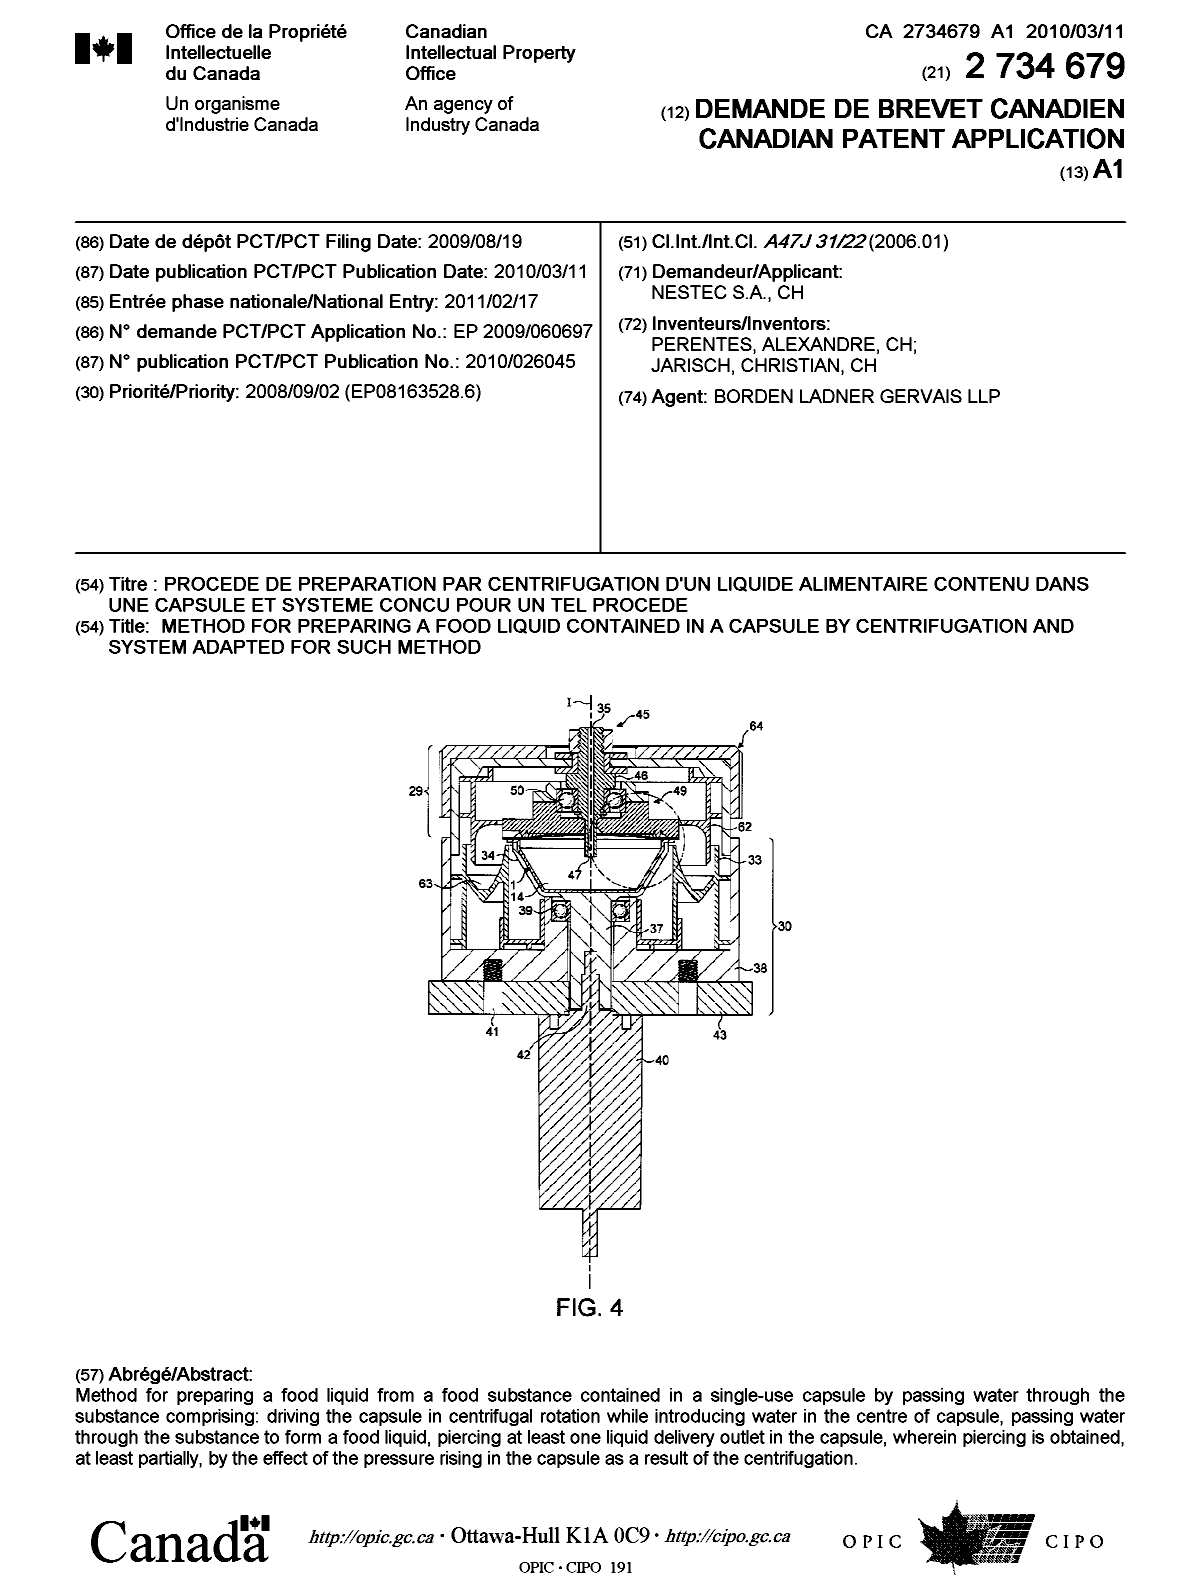 Document de brevet canadien 2734679. Page couverture 20110419. Image 1 de 1